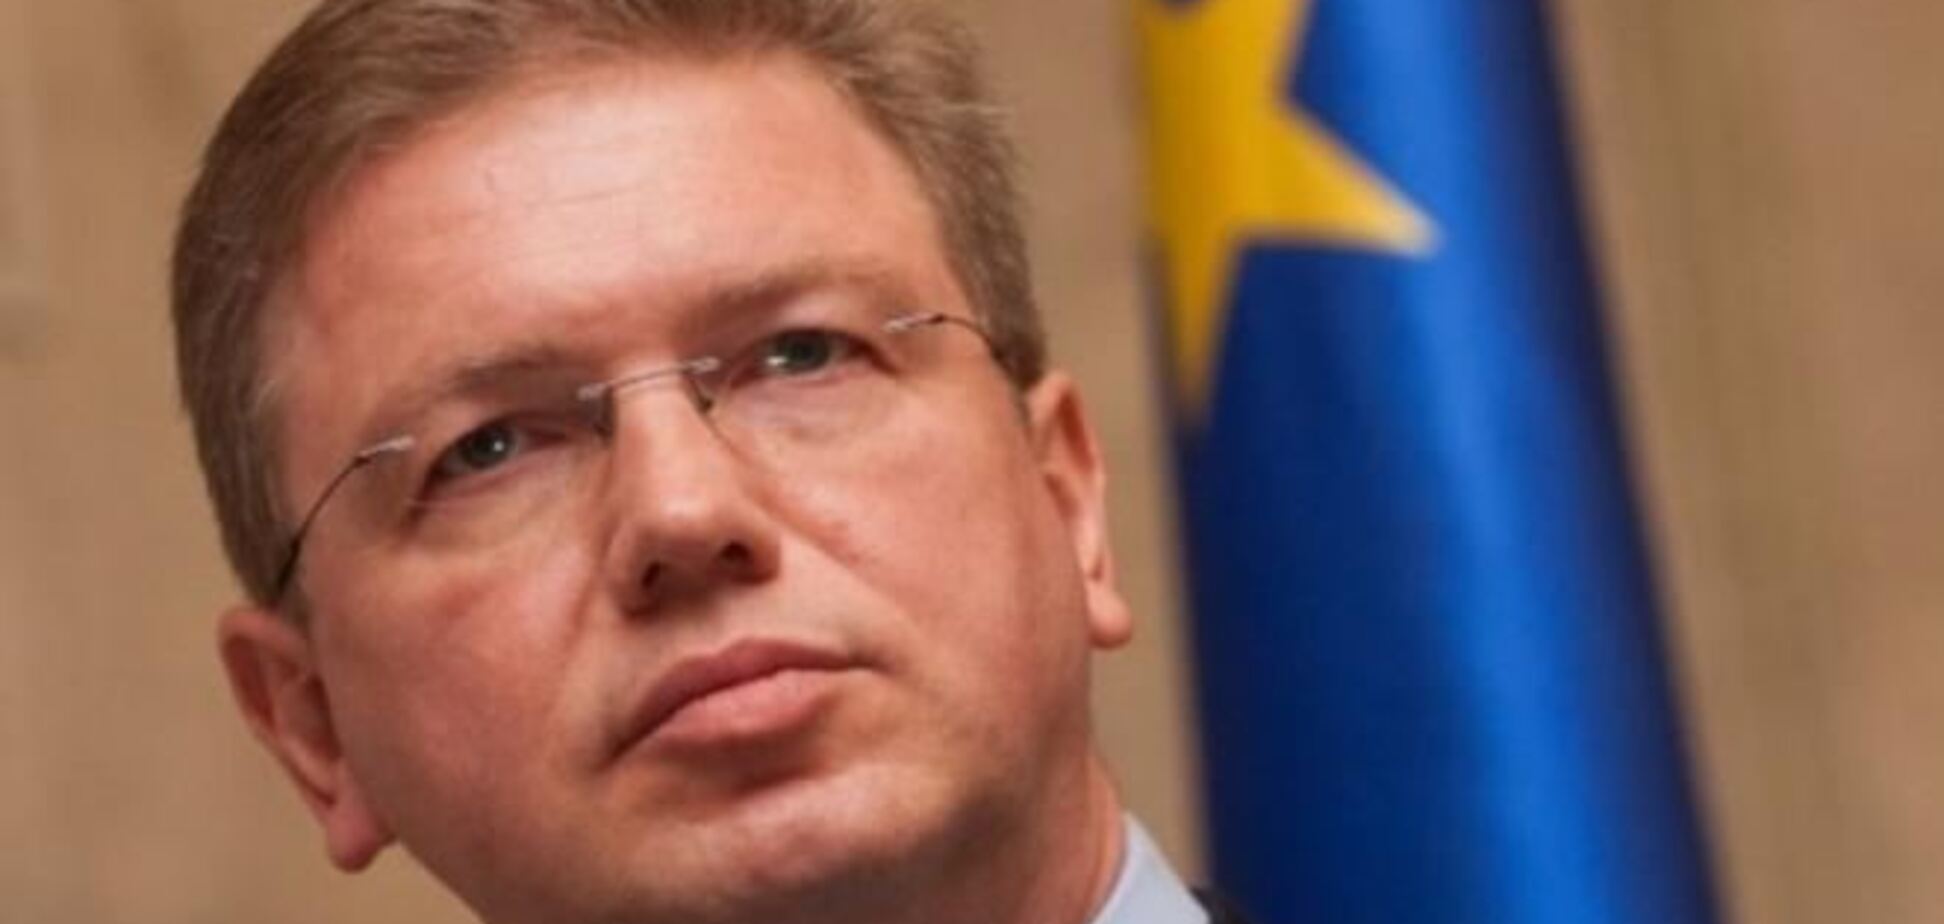 Фюле: новые законы Украины противоречат европейским устремлениям